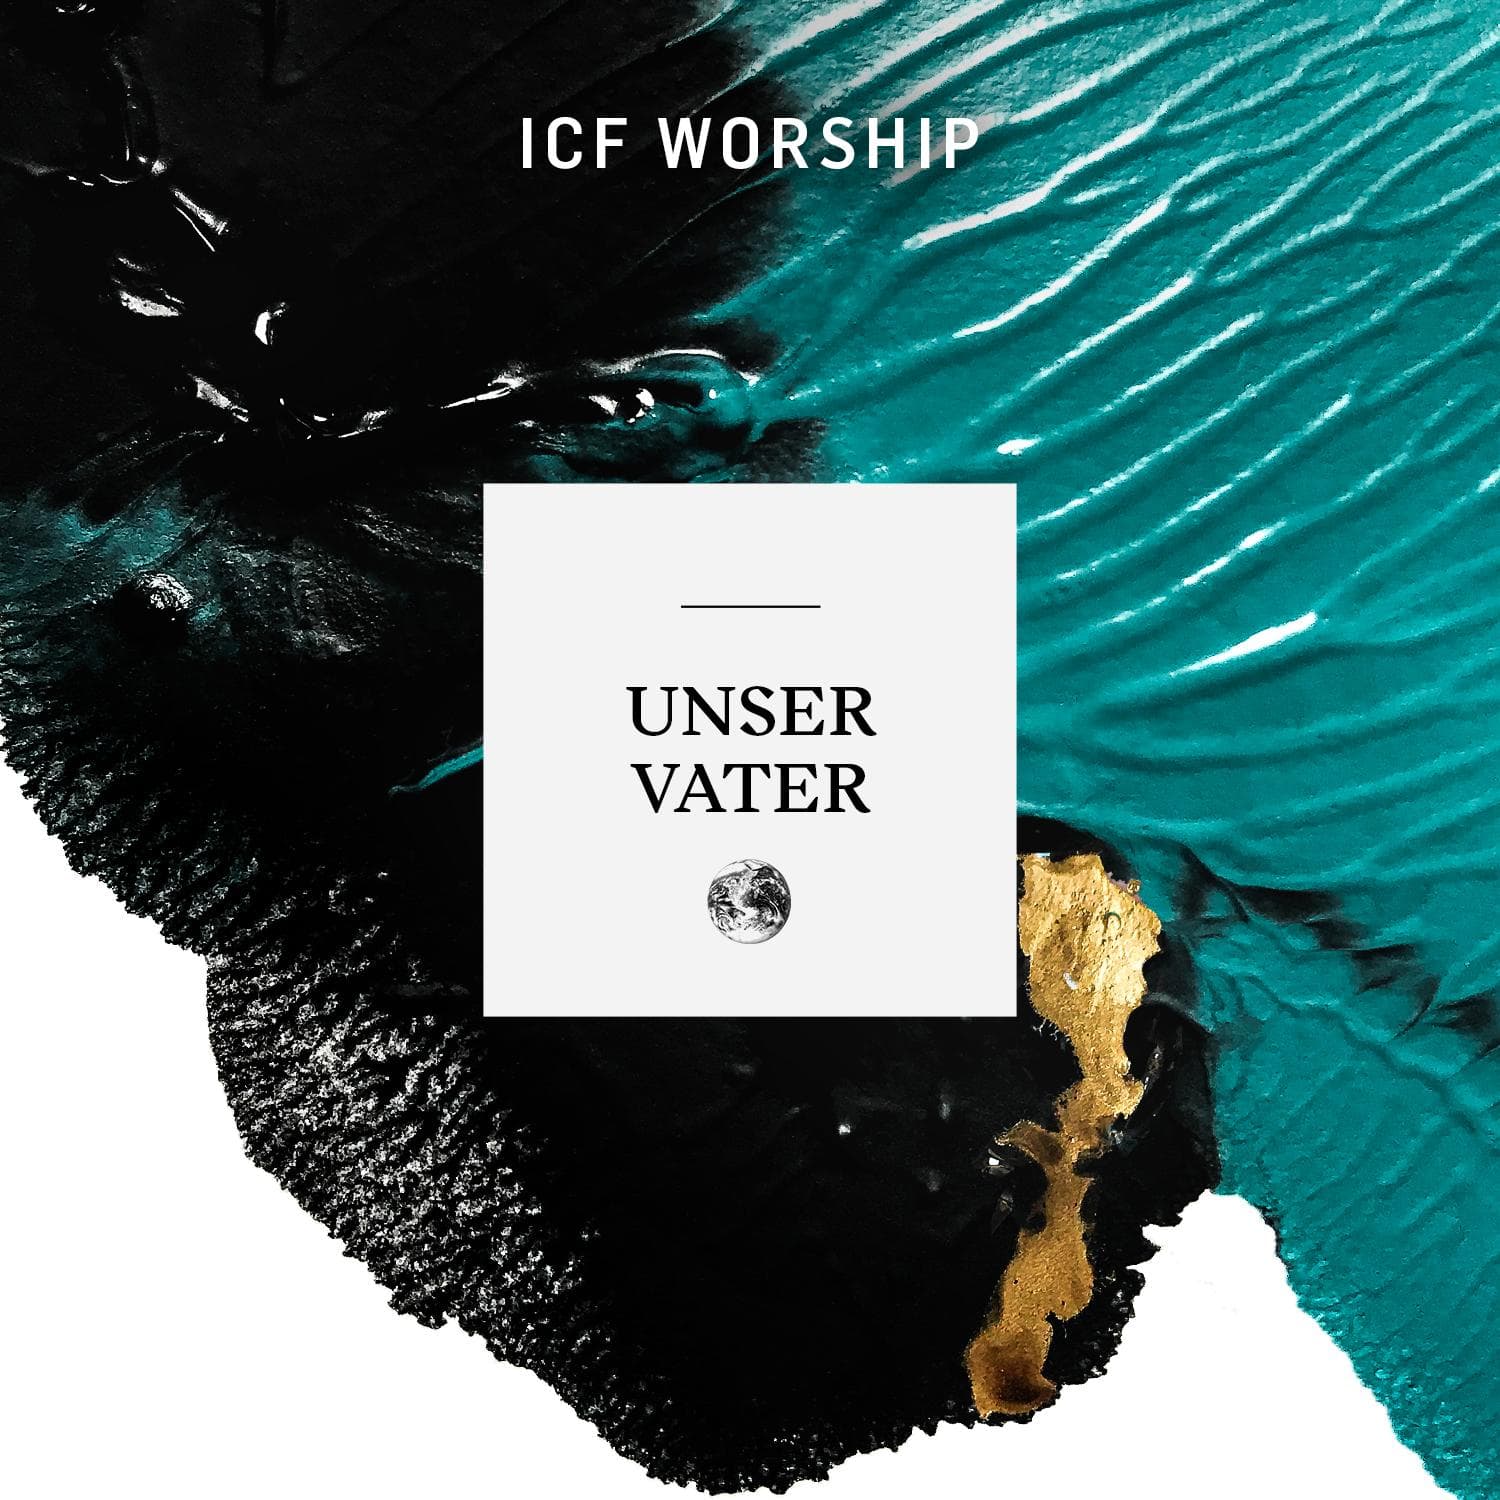 Unser Vater - ICF Worship